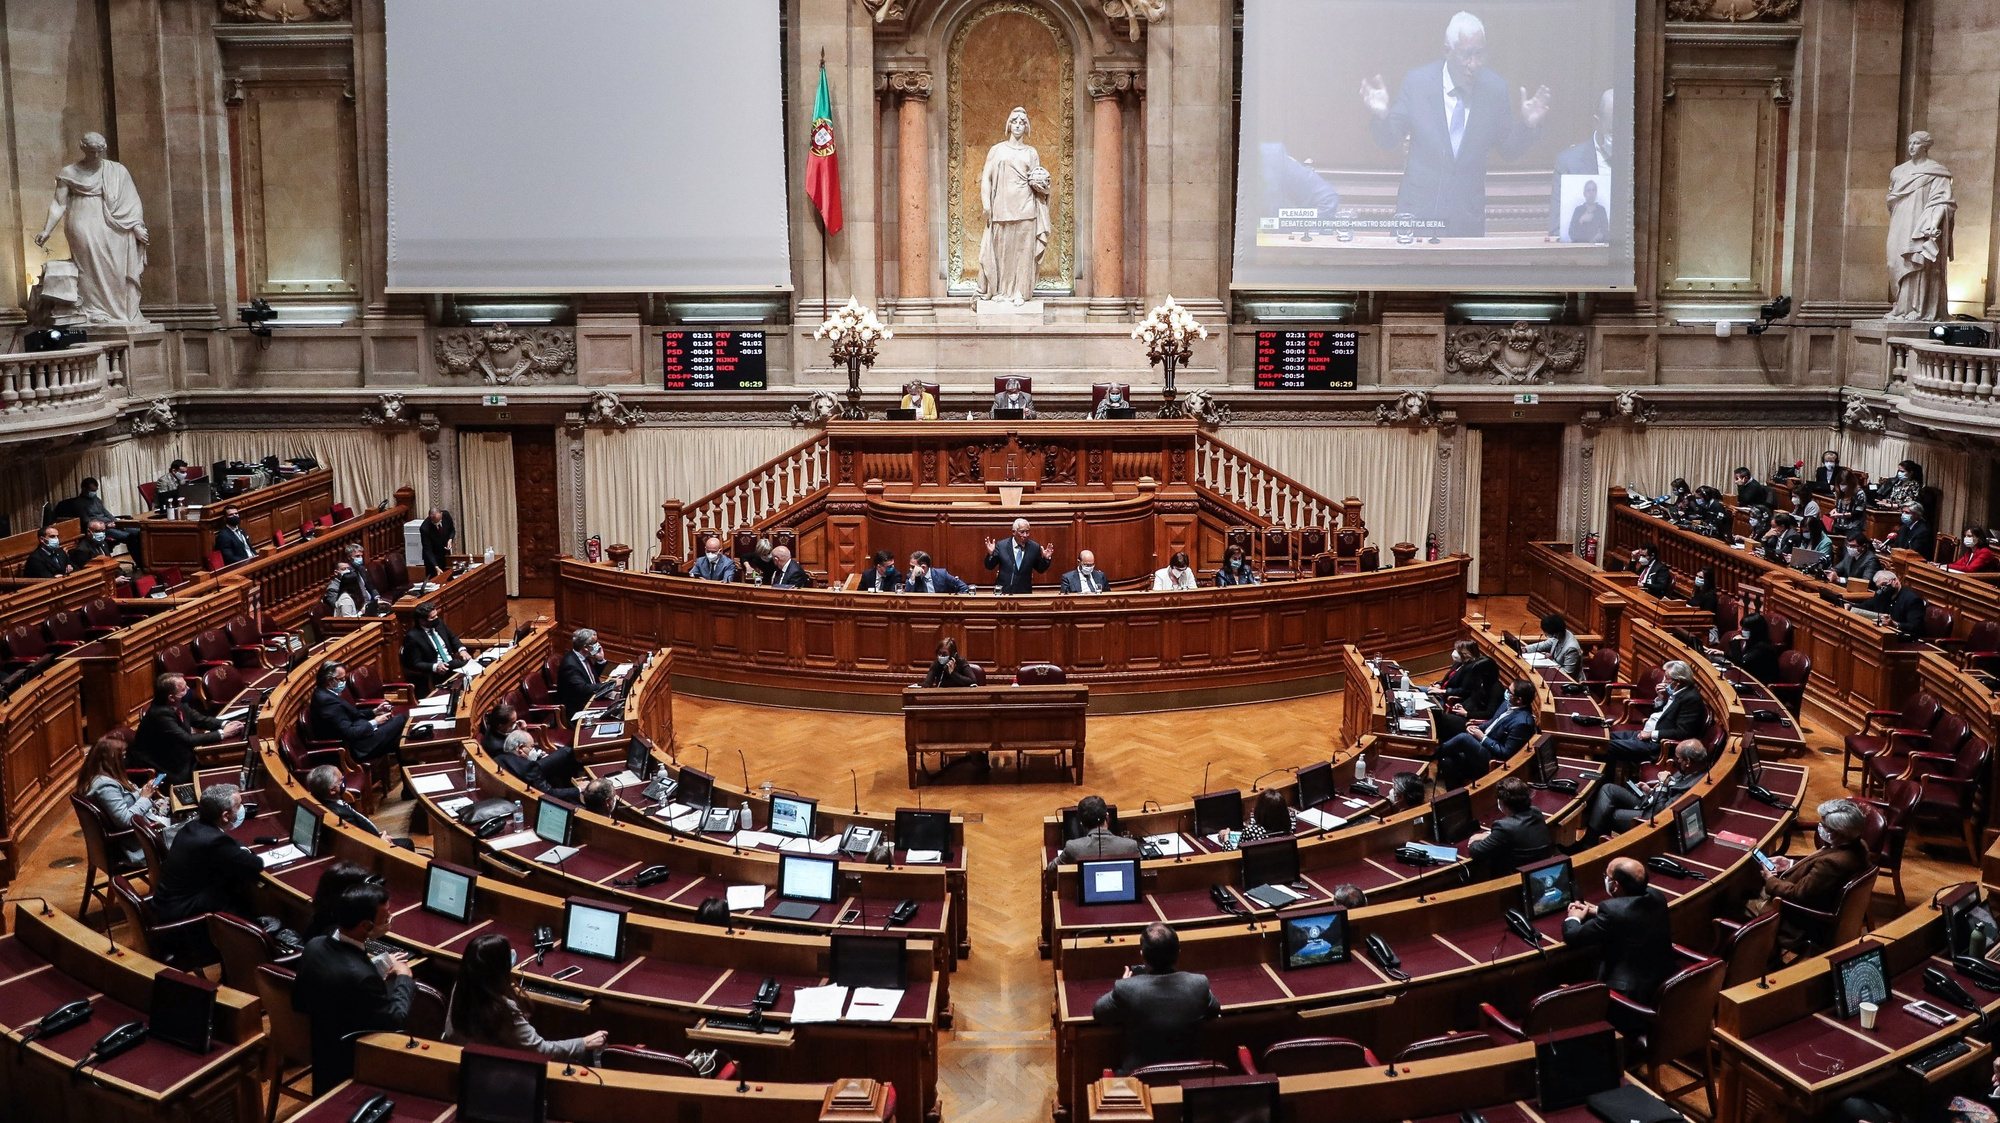 O primeiro-ministro, António Costa (C), participa no debate parlamentar sobre política geral, na Assembleia da República, em Lisboa, 17 de março de 2021. MÁRIO CRUZ/LUSA